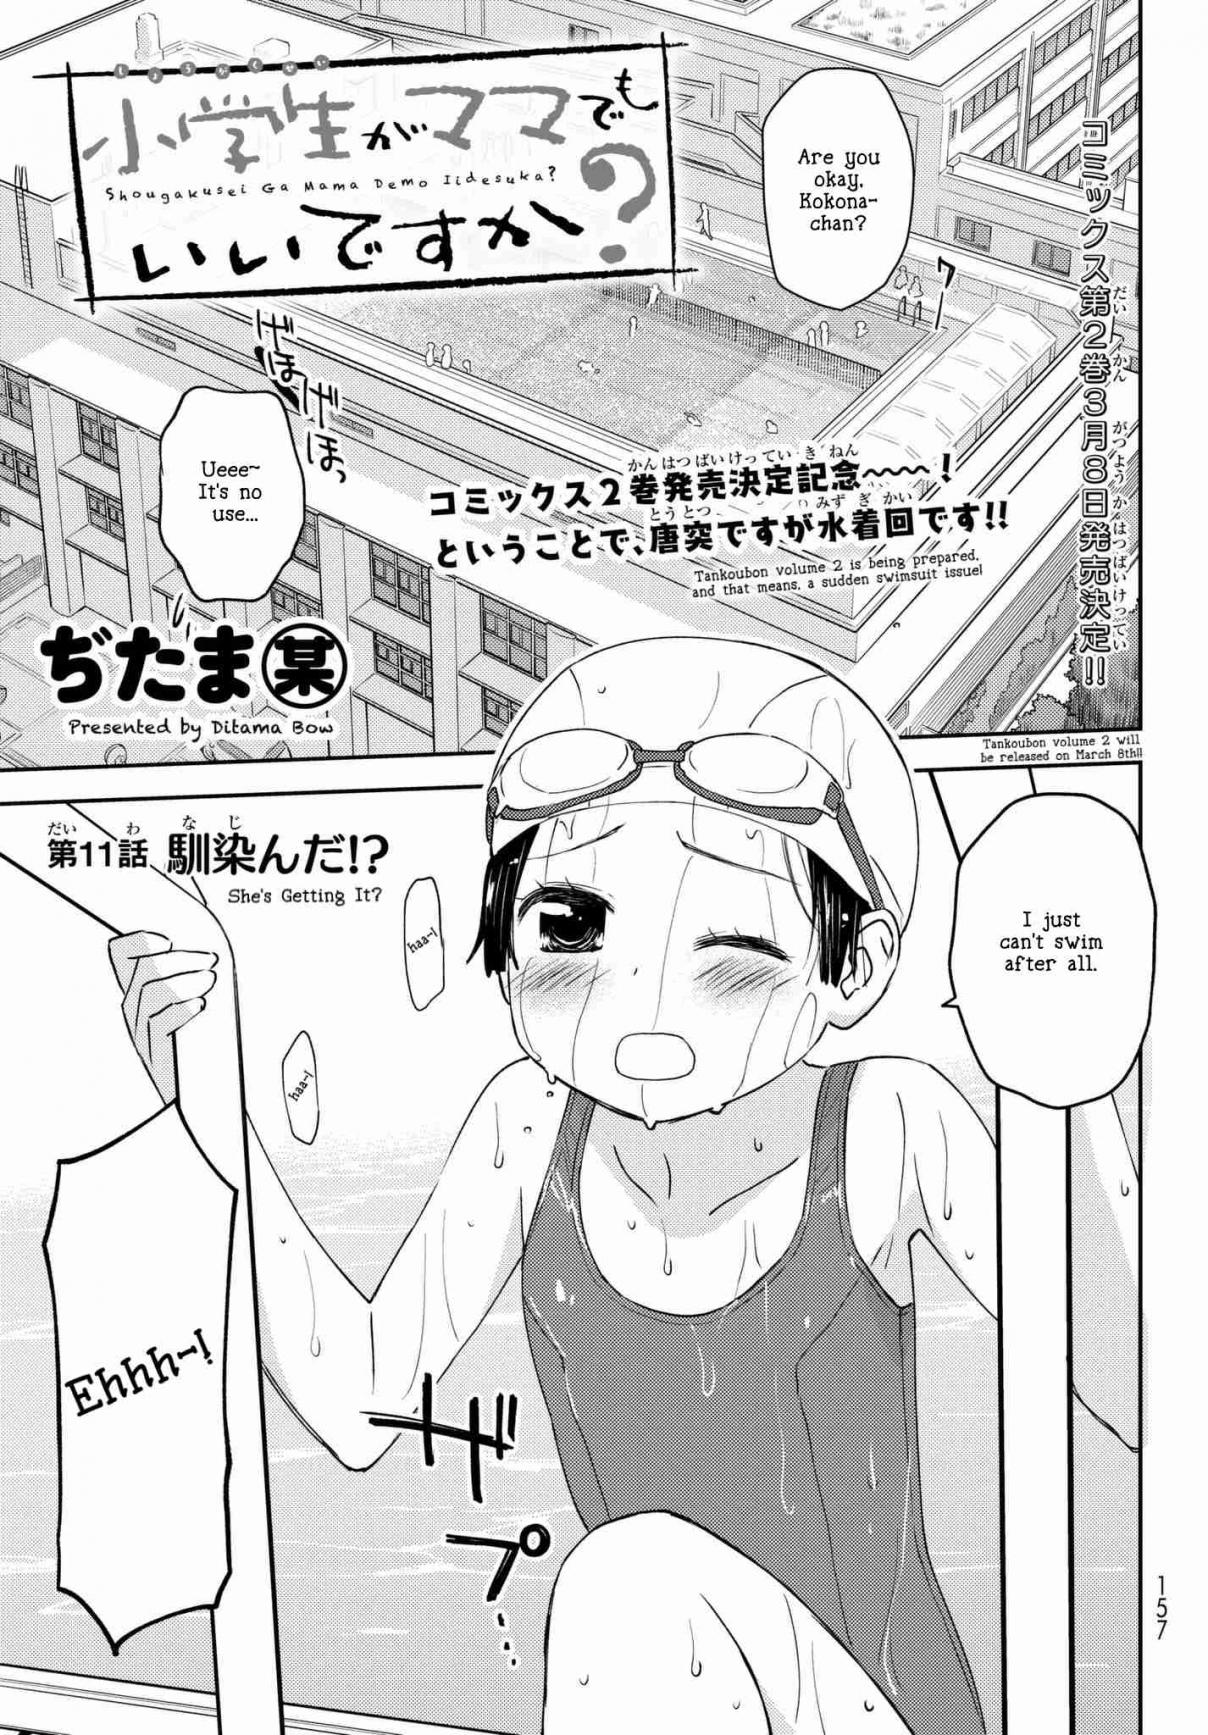 Shougakusei ga Mama demo Ii desu ka? Vol. 2 Ch. 11 Najinda!? "She's getting It!?"